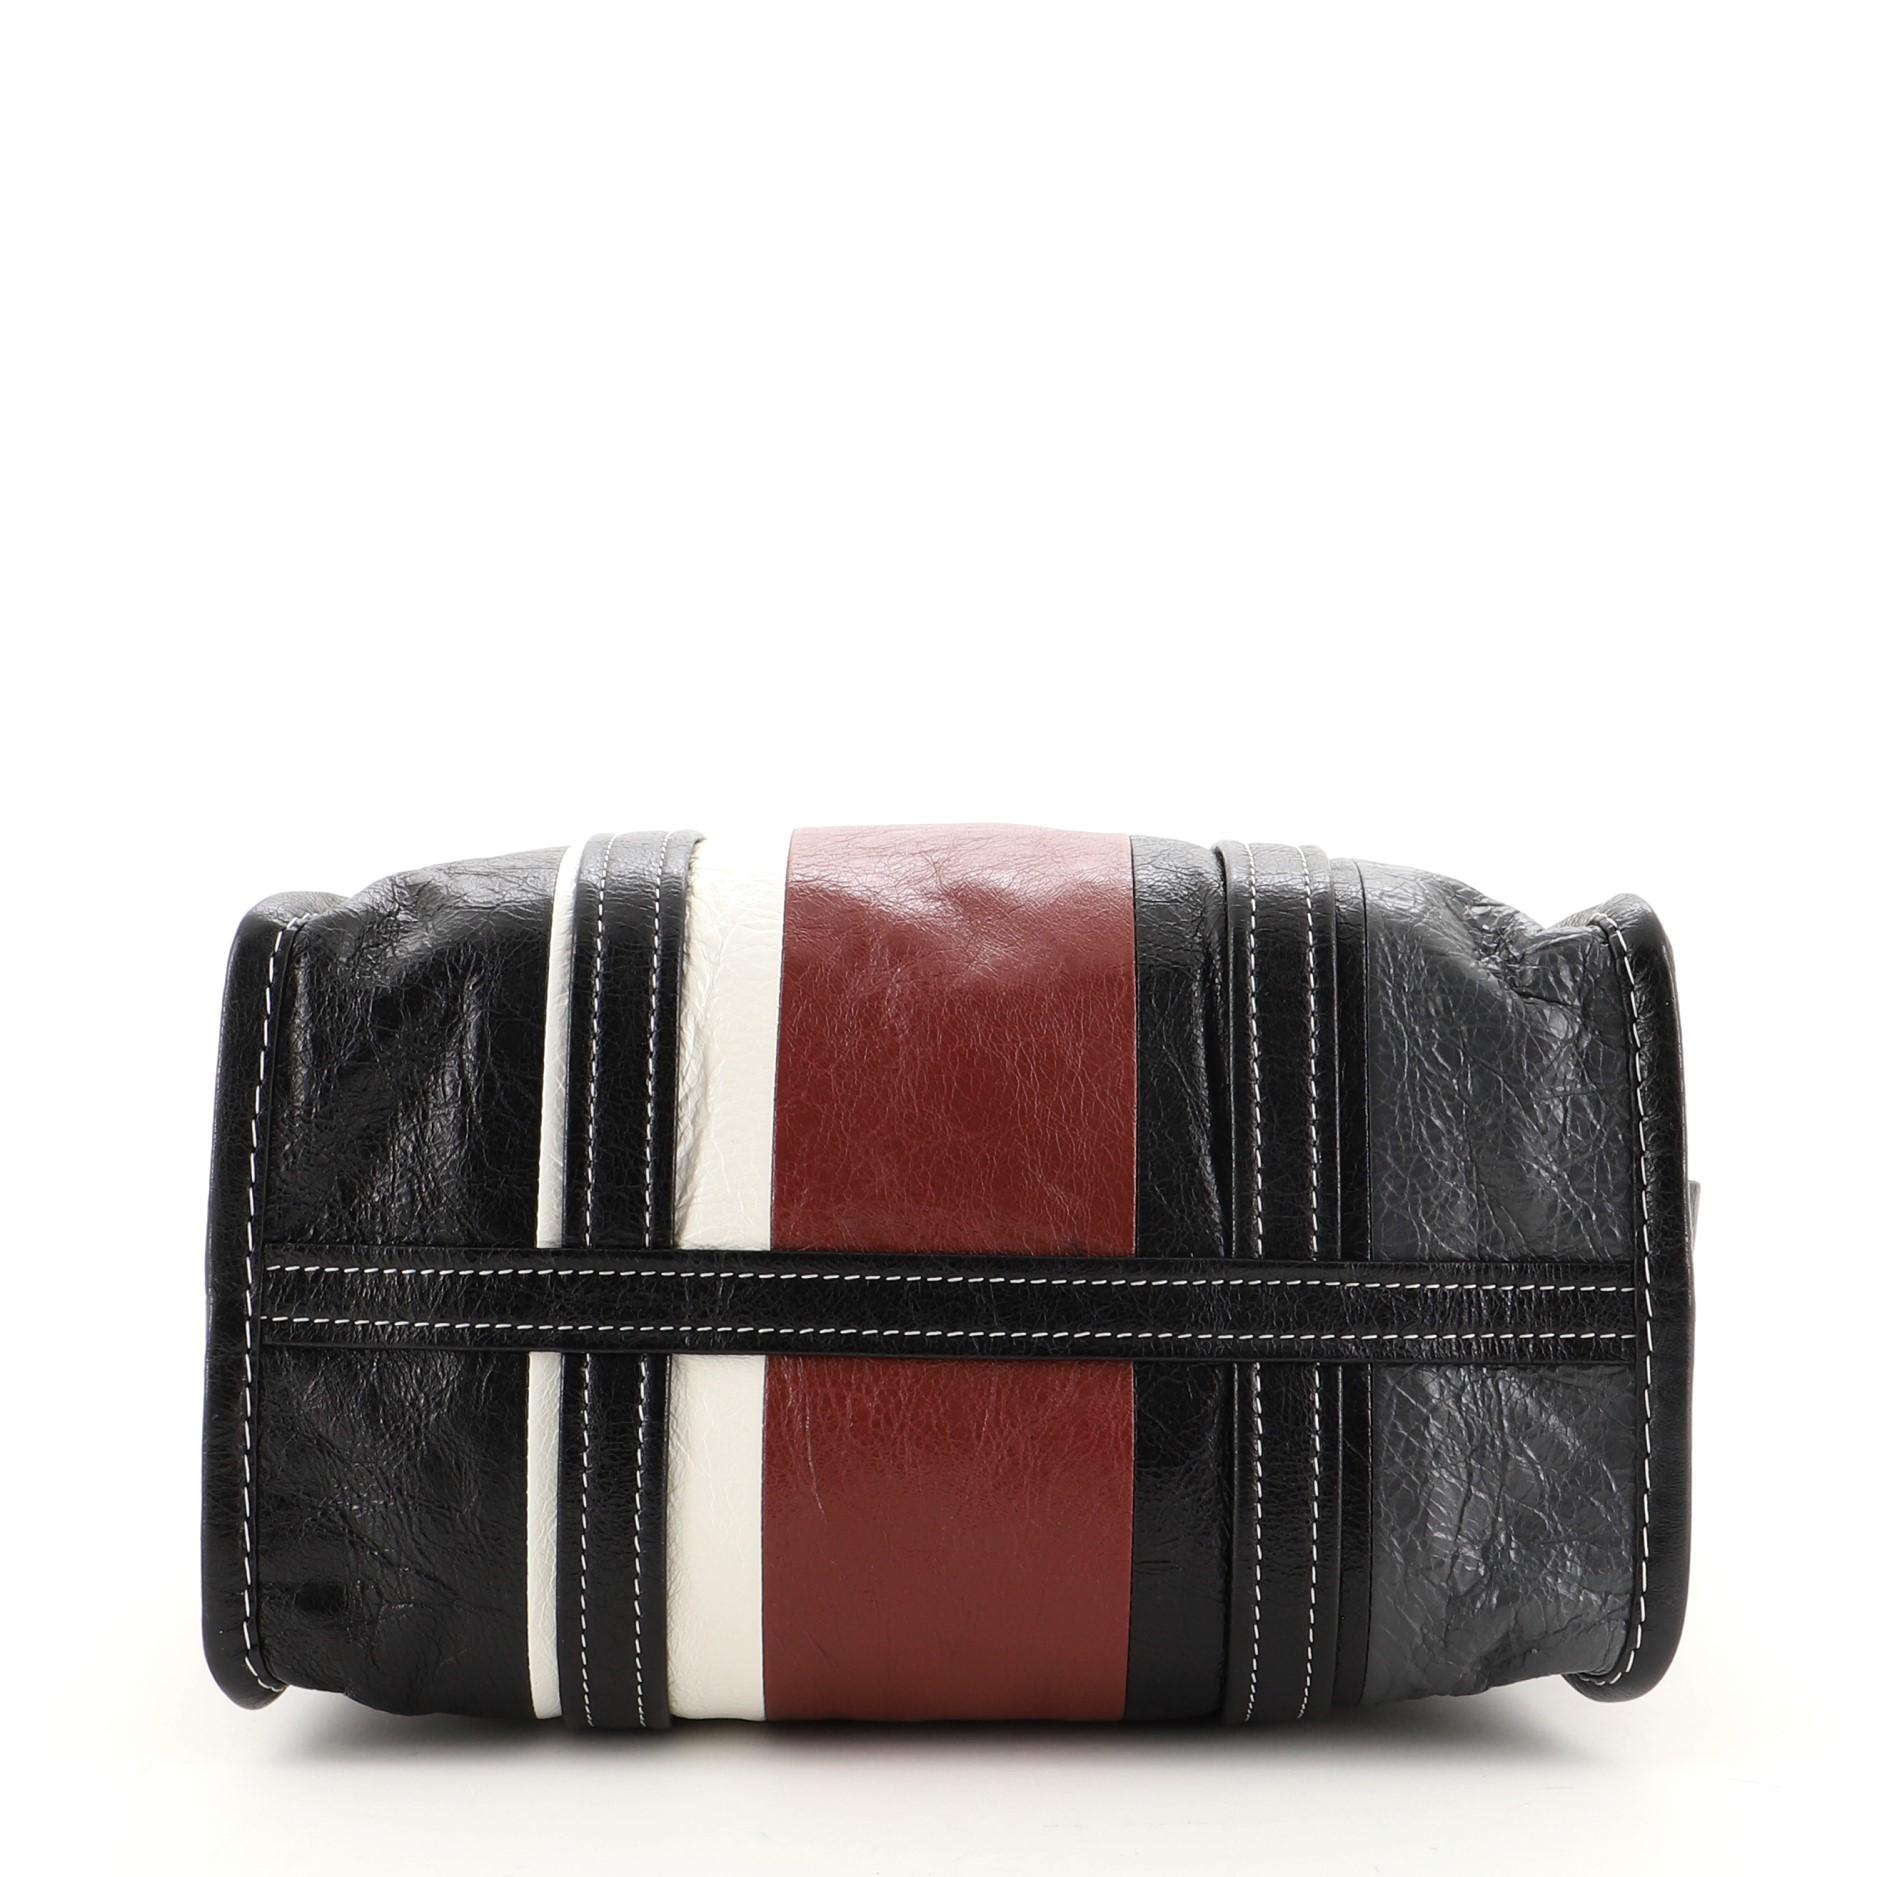 Balenciaga Bazar Convertible Tote Striped Leather Small Black, Multicolor, Red In Good Condition In Irvine, CA